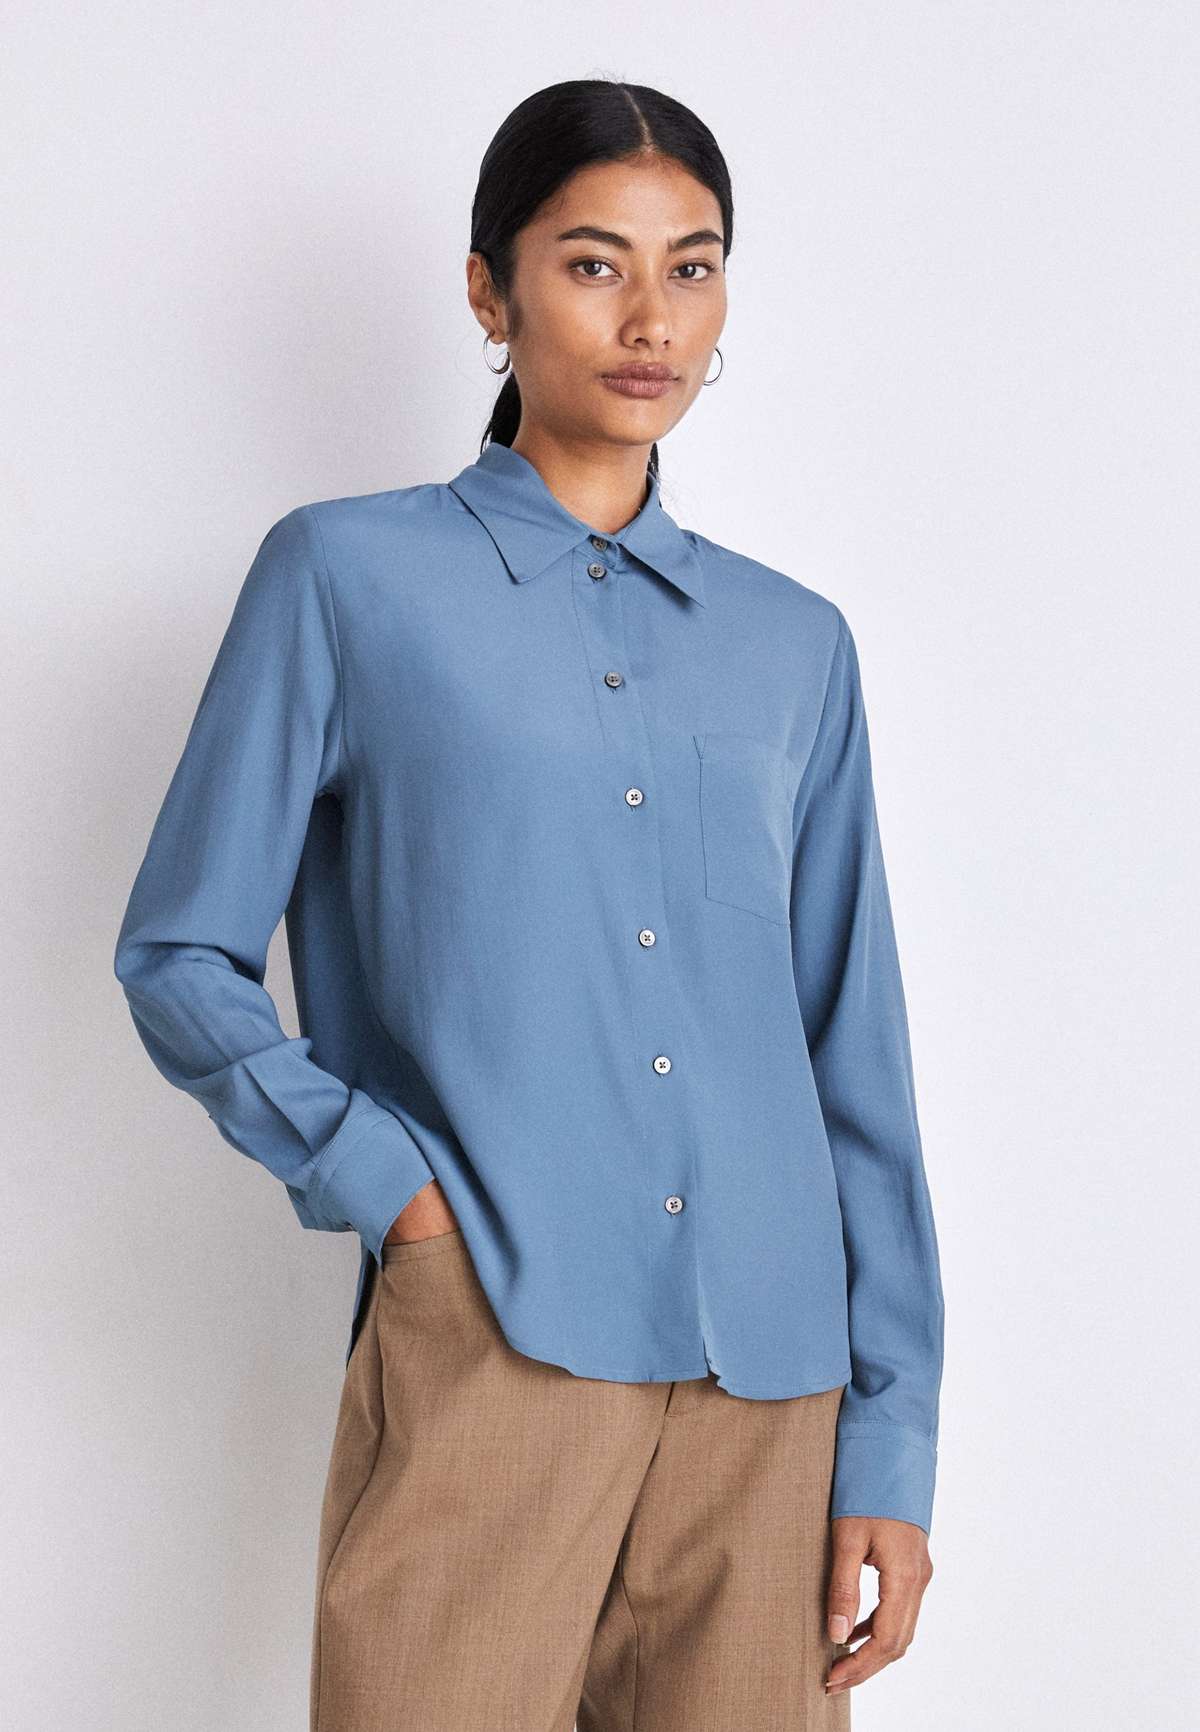 Блуза-рубашка CELOSA